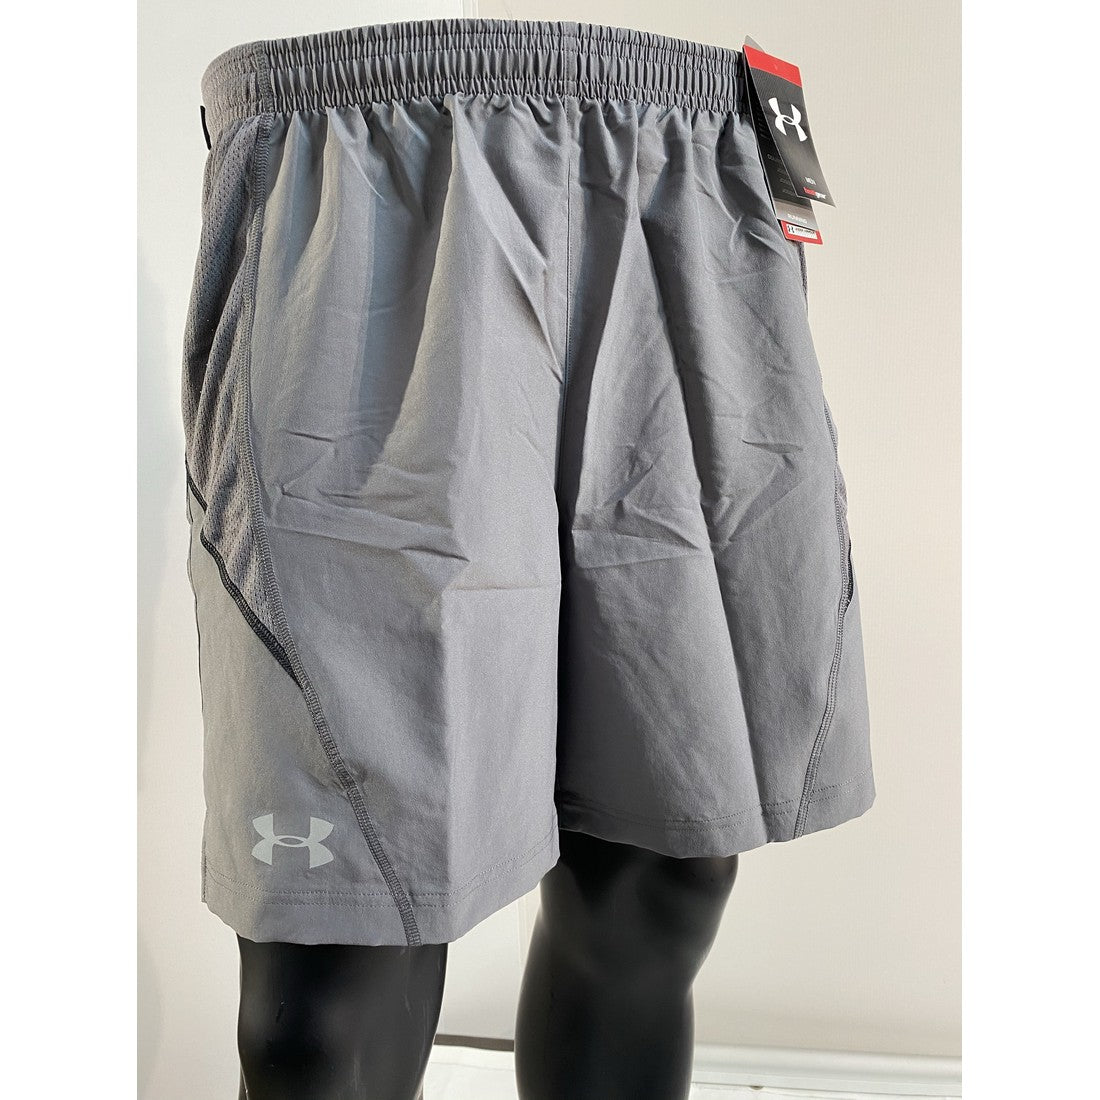 Pantalon corto Parcer 2.0 para hombre de Under Armour – Liquidación